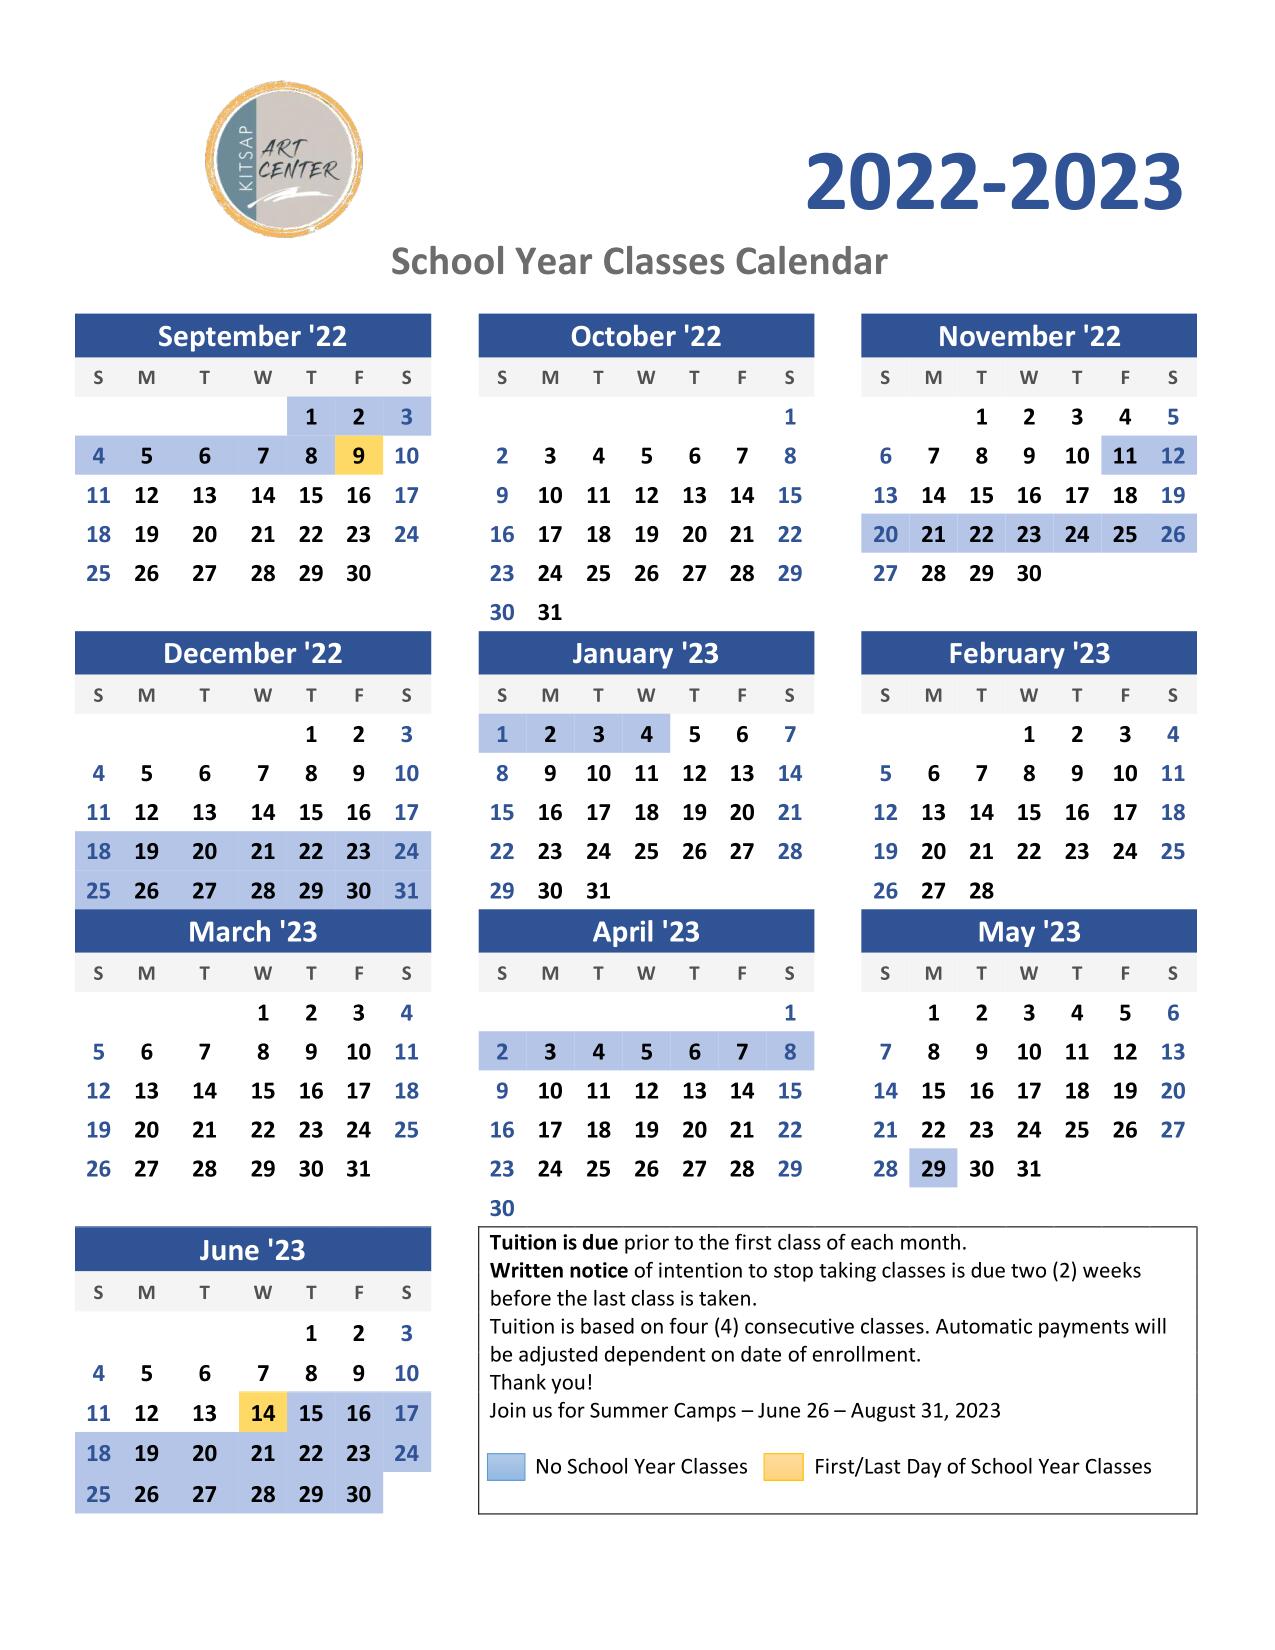 2022-2023 School Year Class Calendar